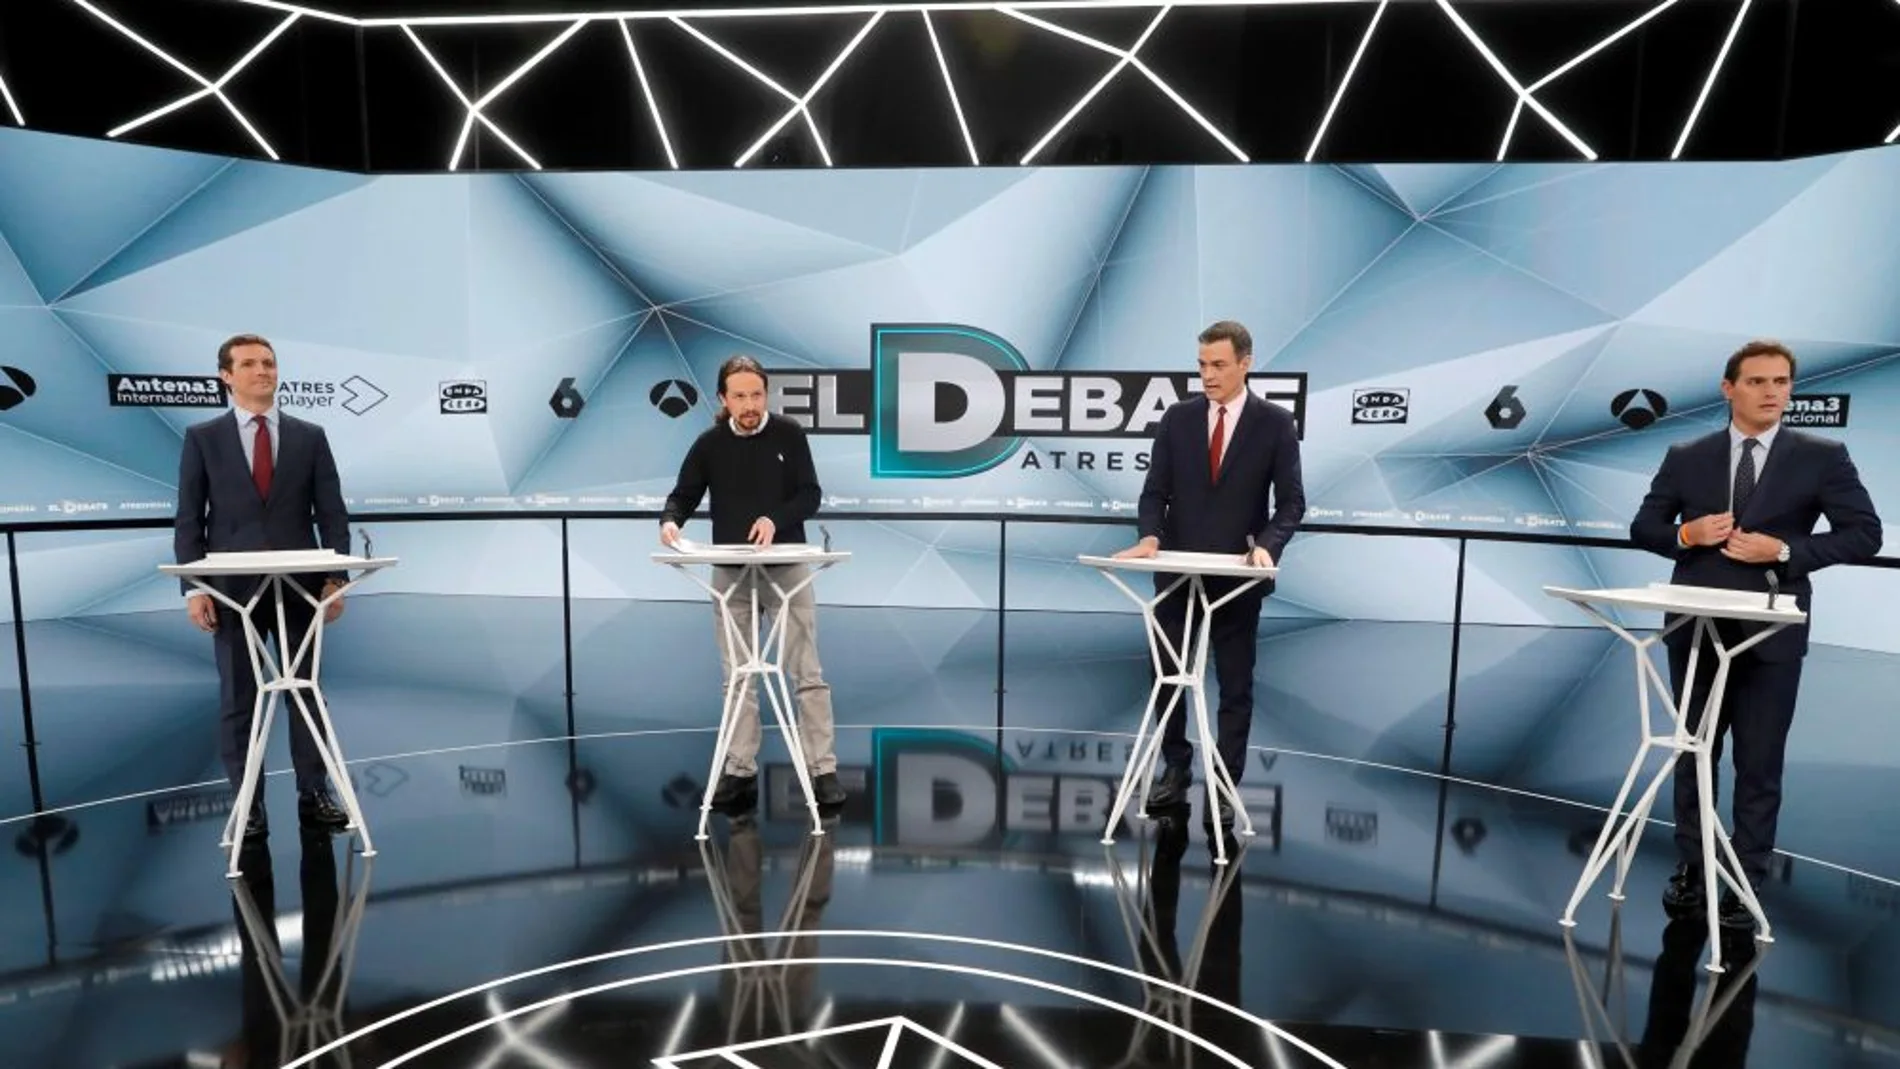 El 23 de abril de 2019 se produce el Debate Decisivo